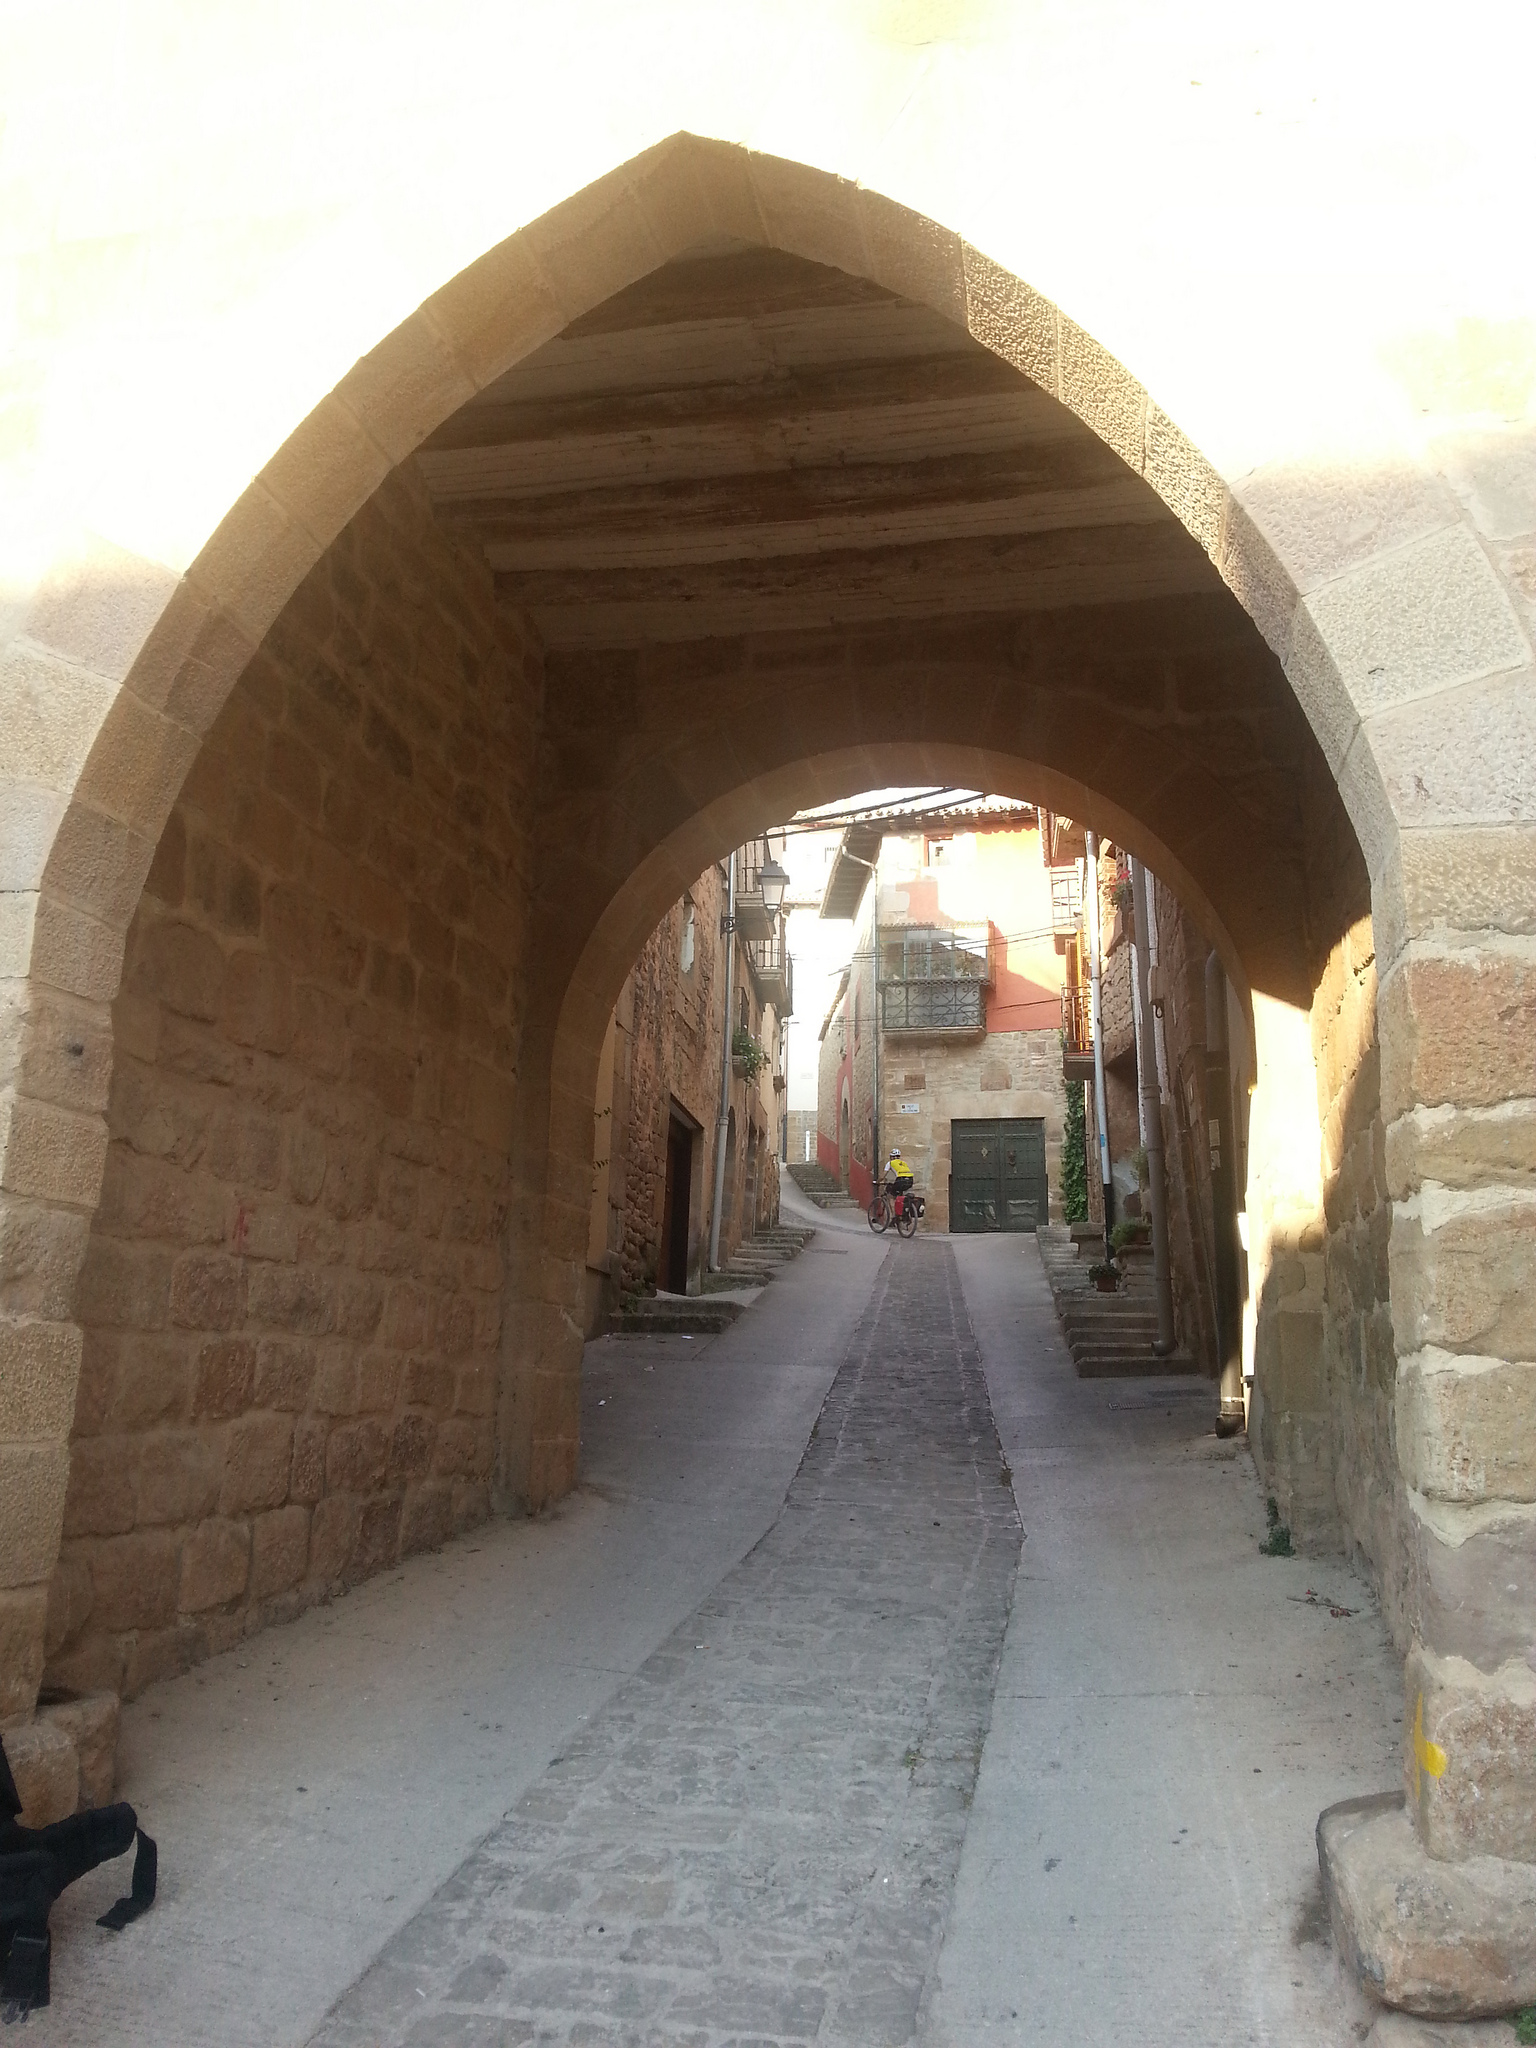 Calle estrecha en el pueblo de Mañeru